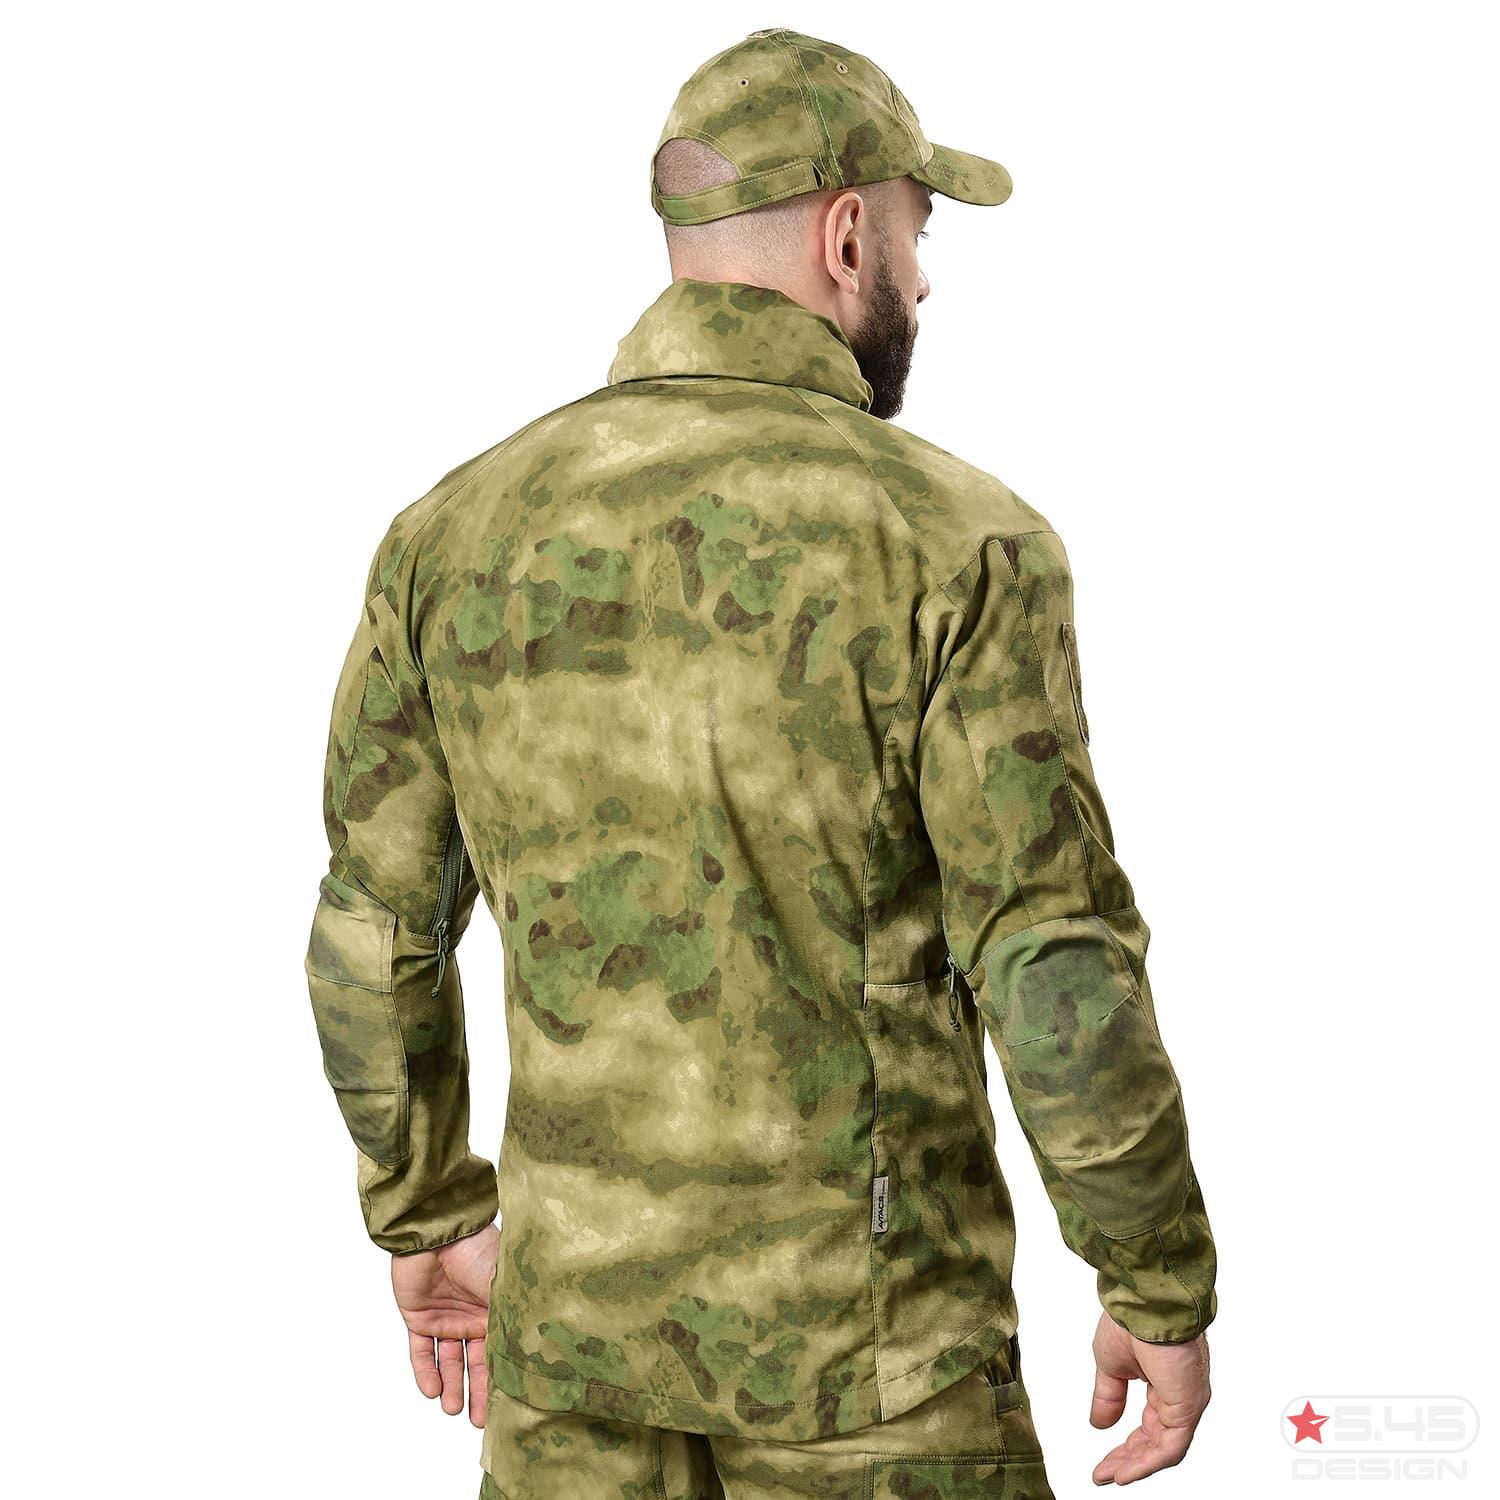 Анатомический крой куртки позволит пользователю чувствовать себя комфортно как при динамике, так и при статическом положении.